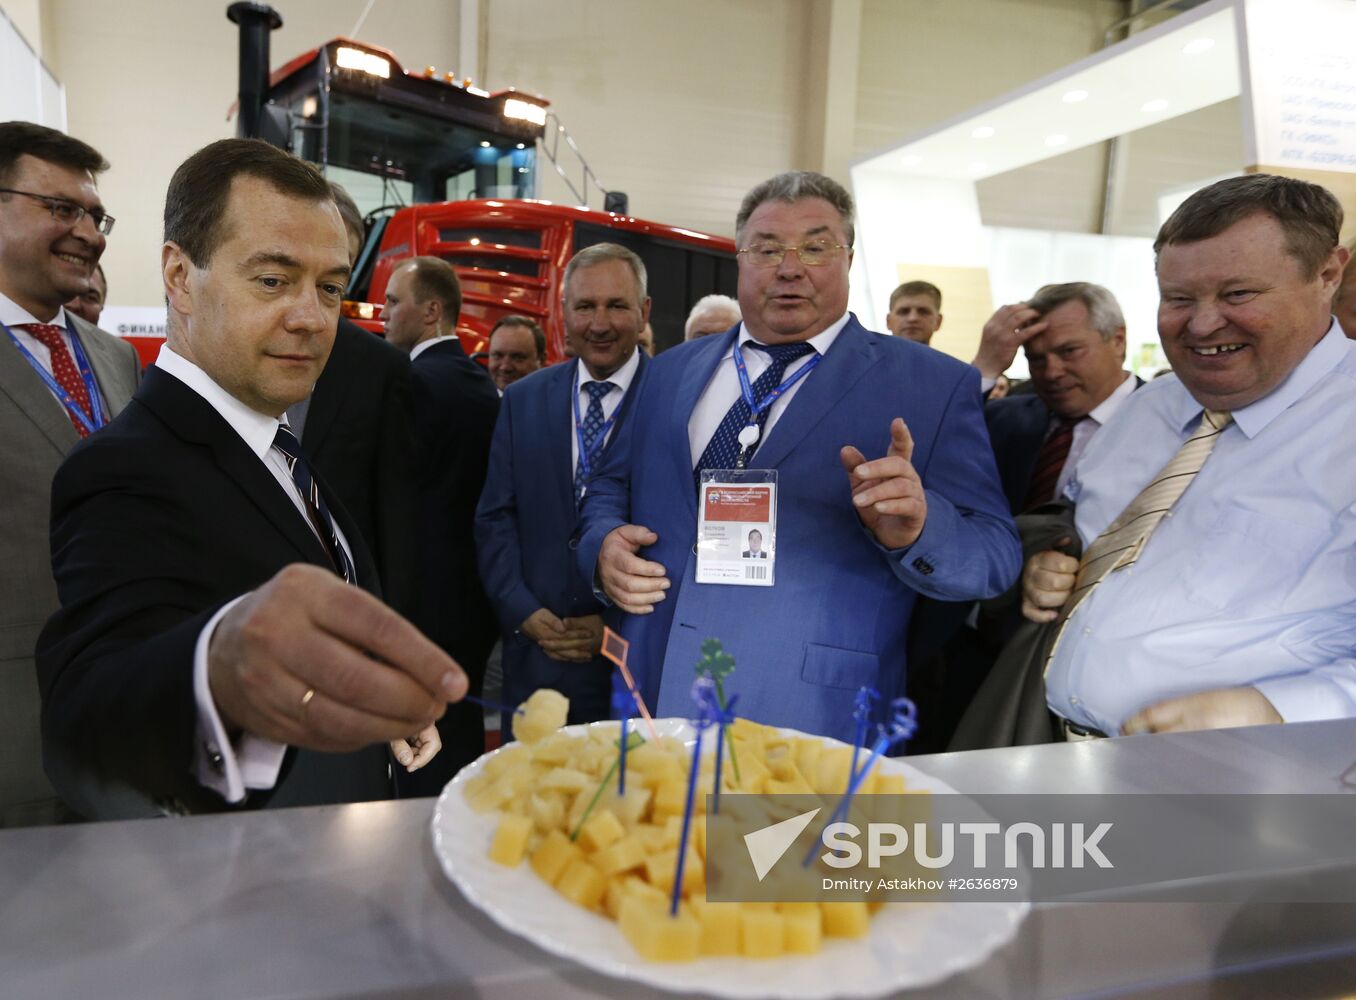 Prime Minister Medvedev visits Southern Federal District